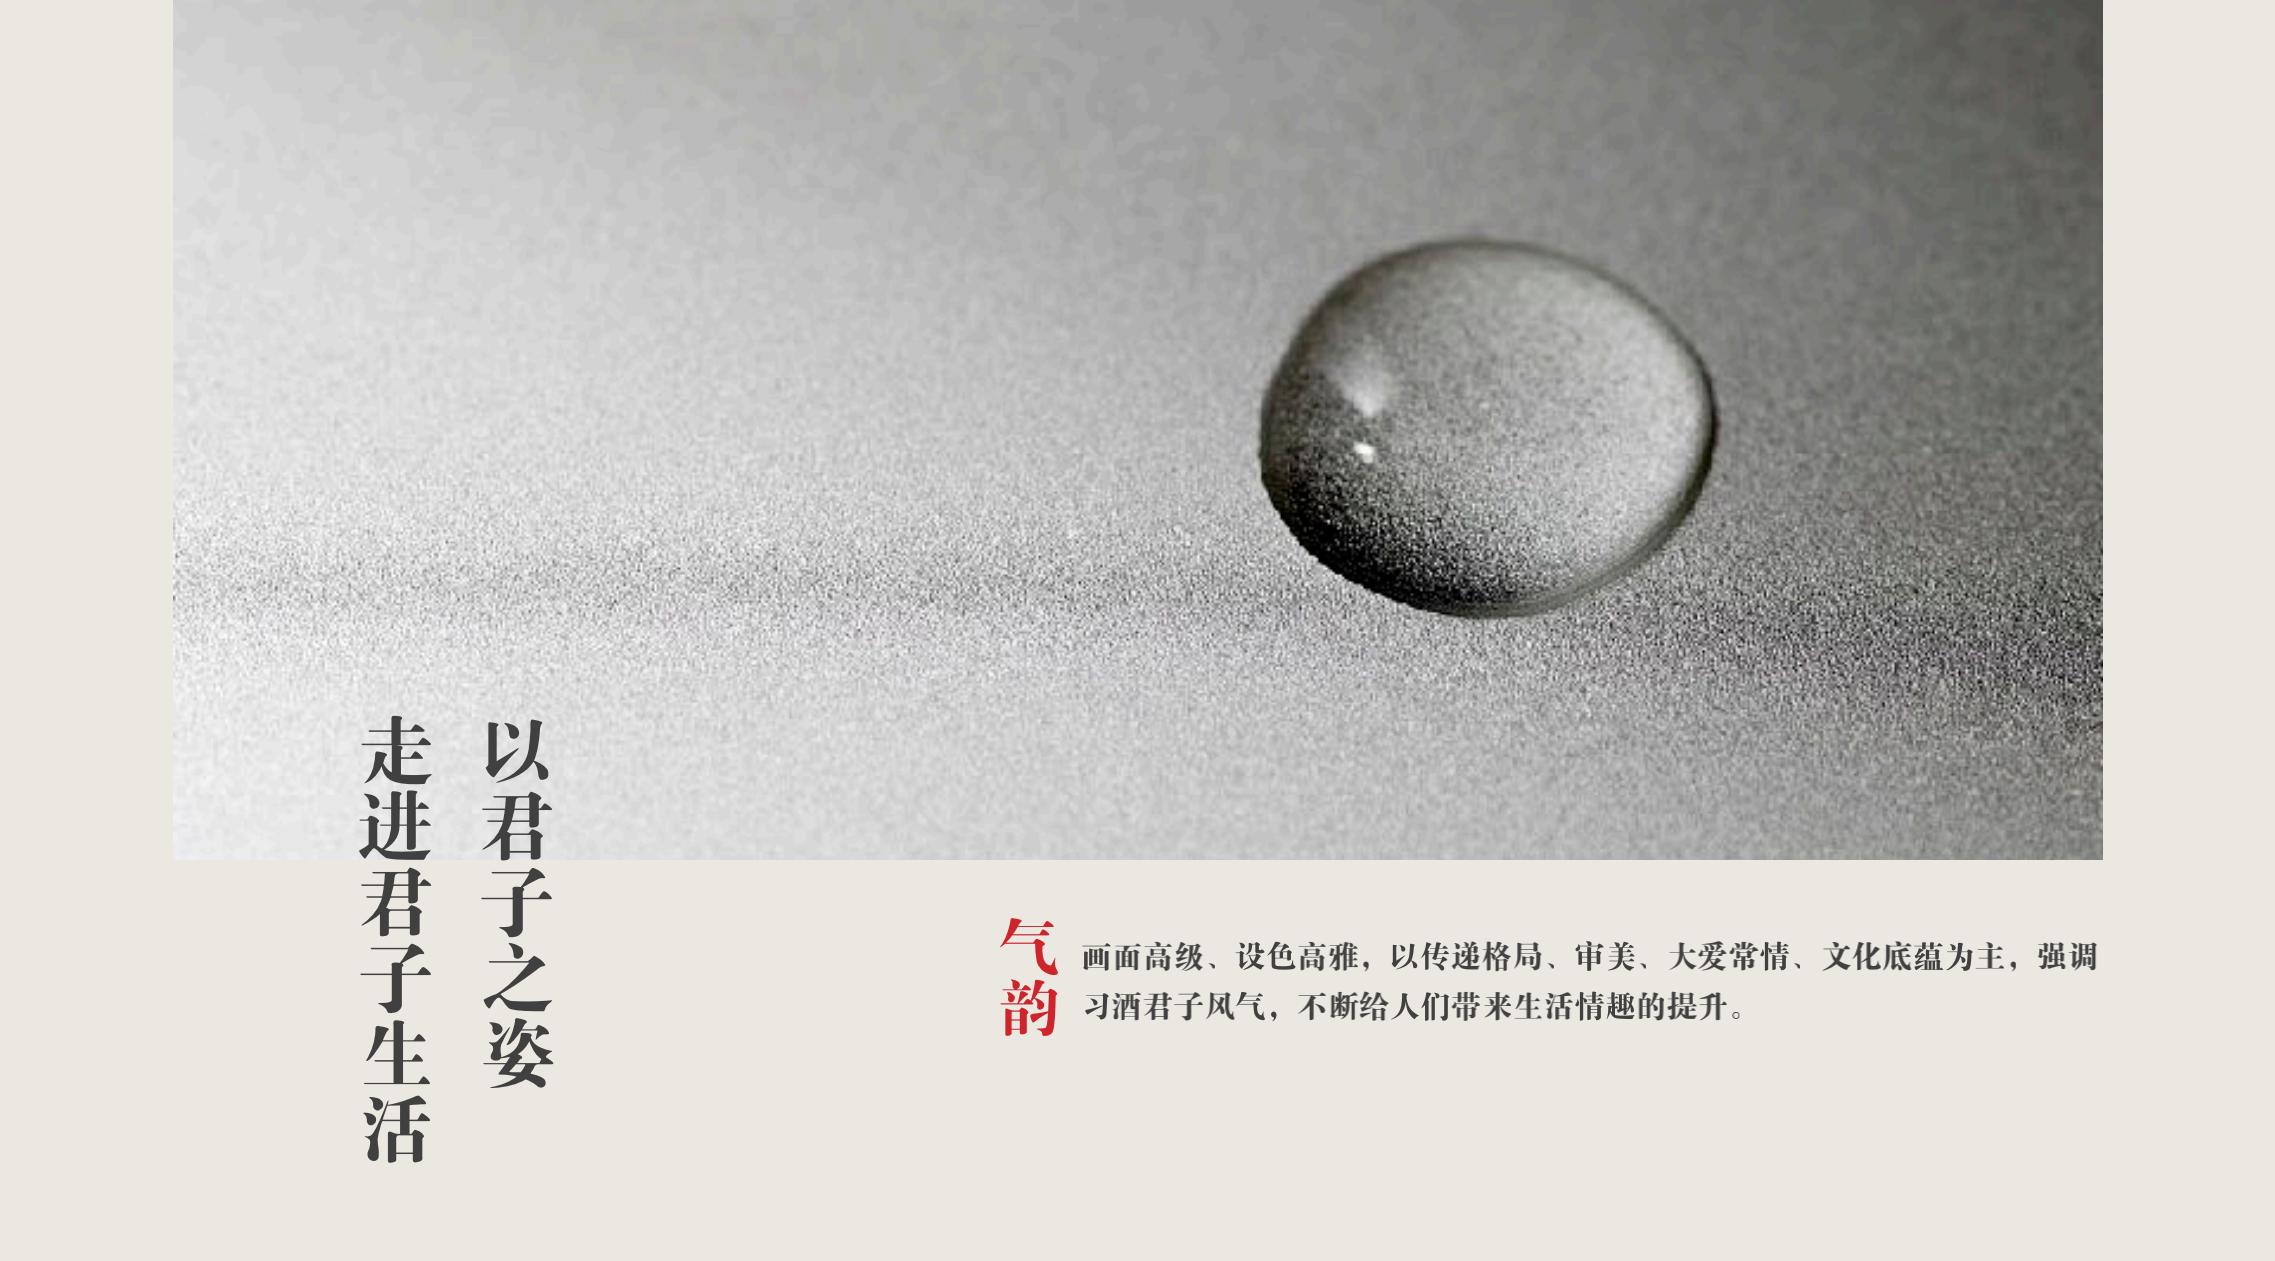 品牌策划 | 习酒平面图创意设计方案|广州活动策划